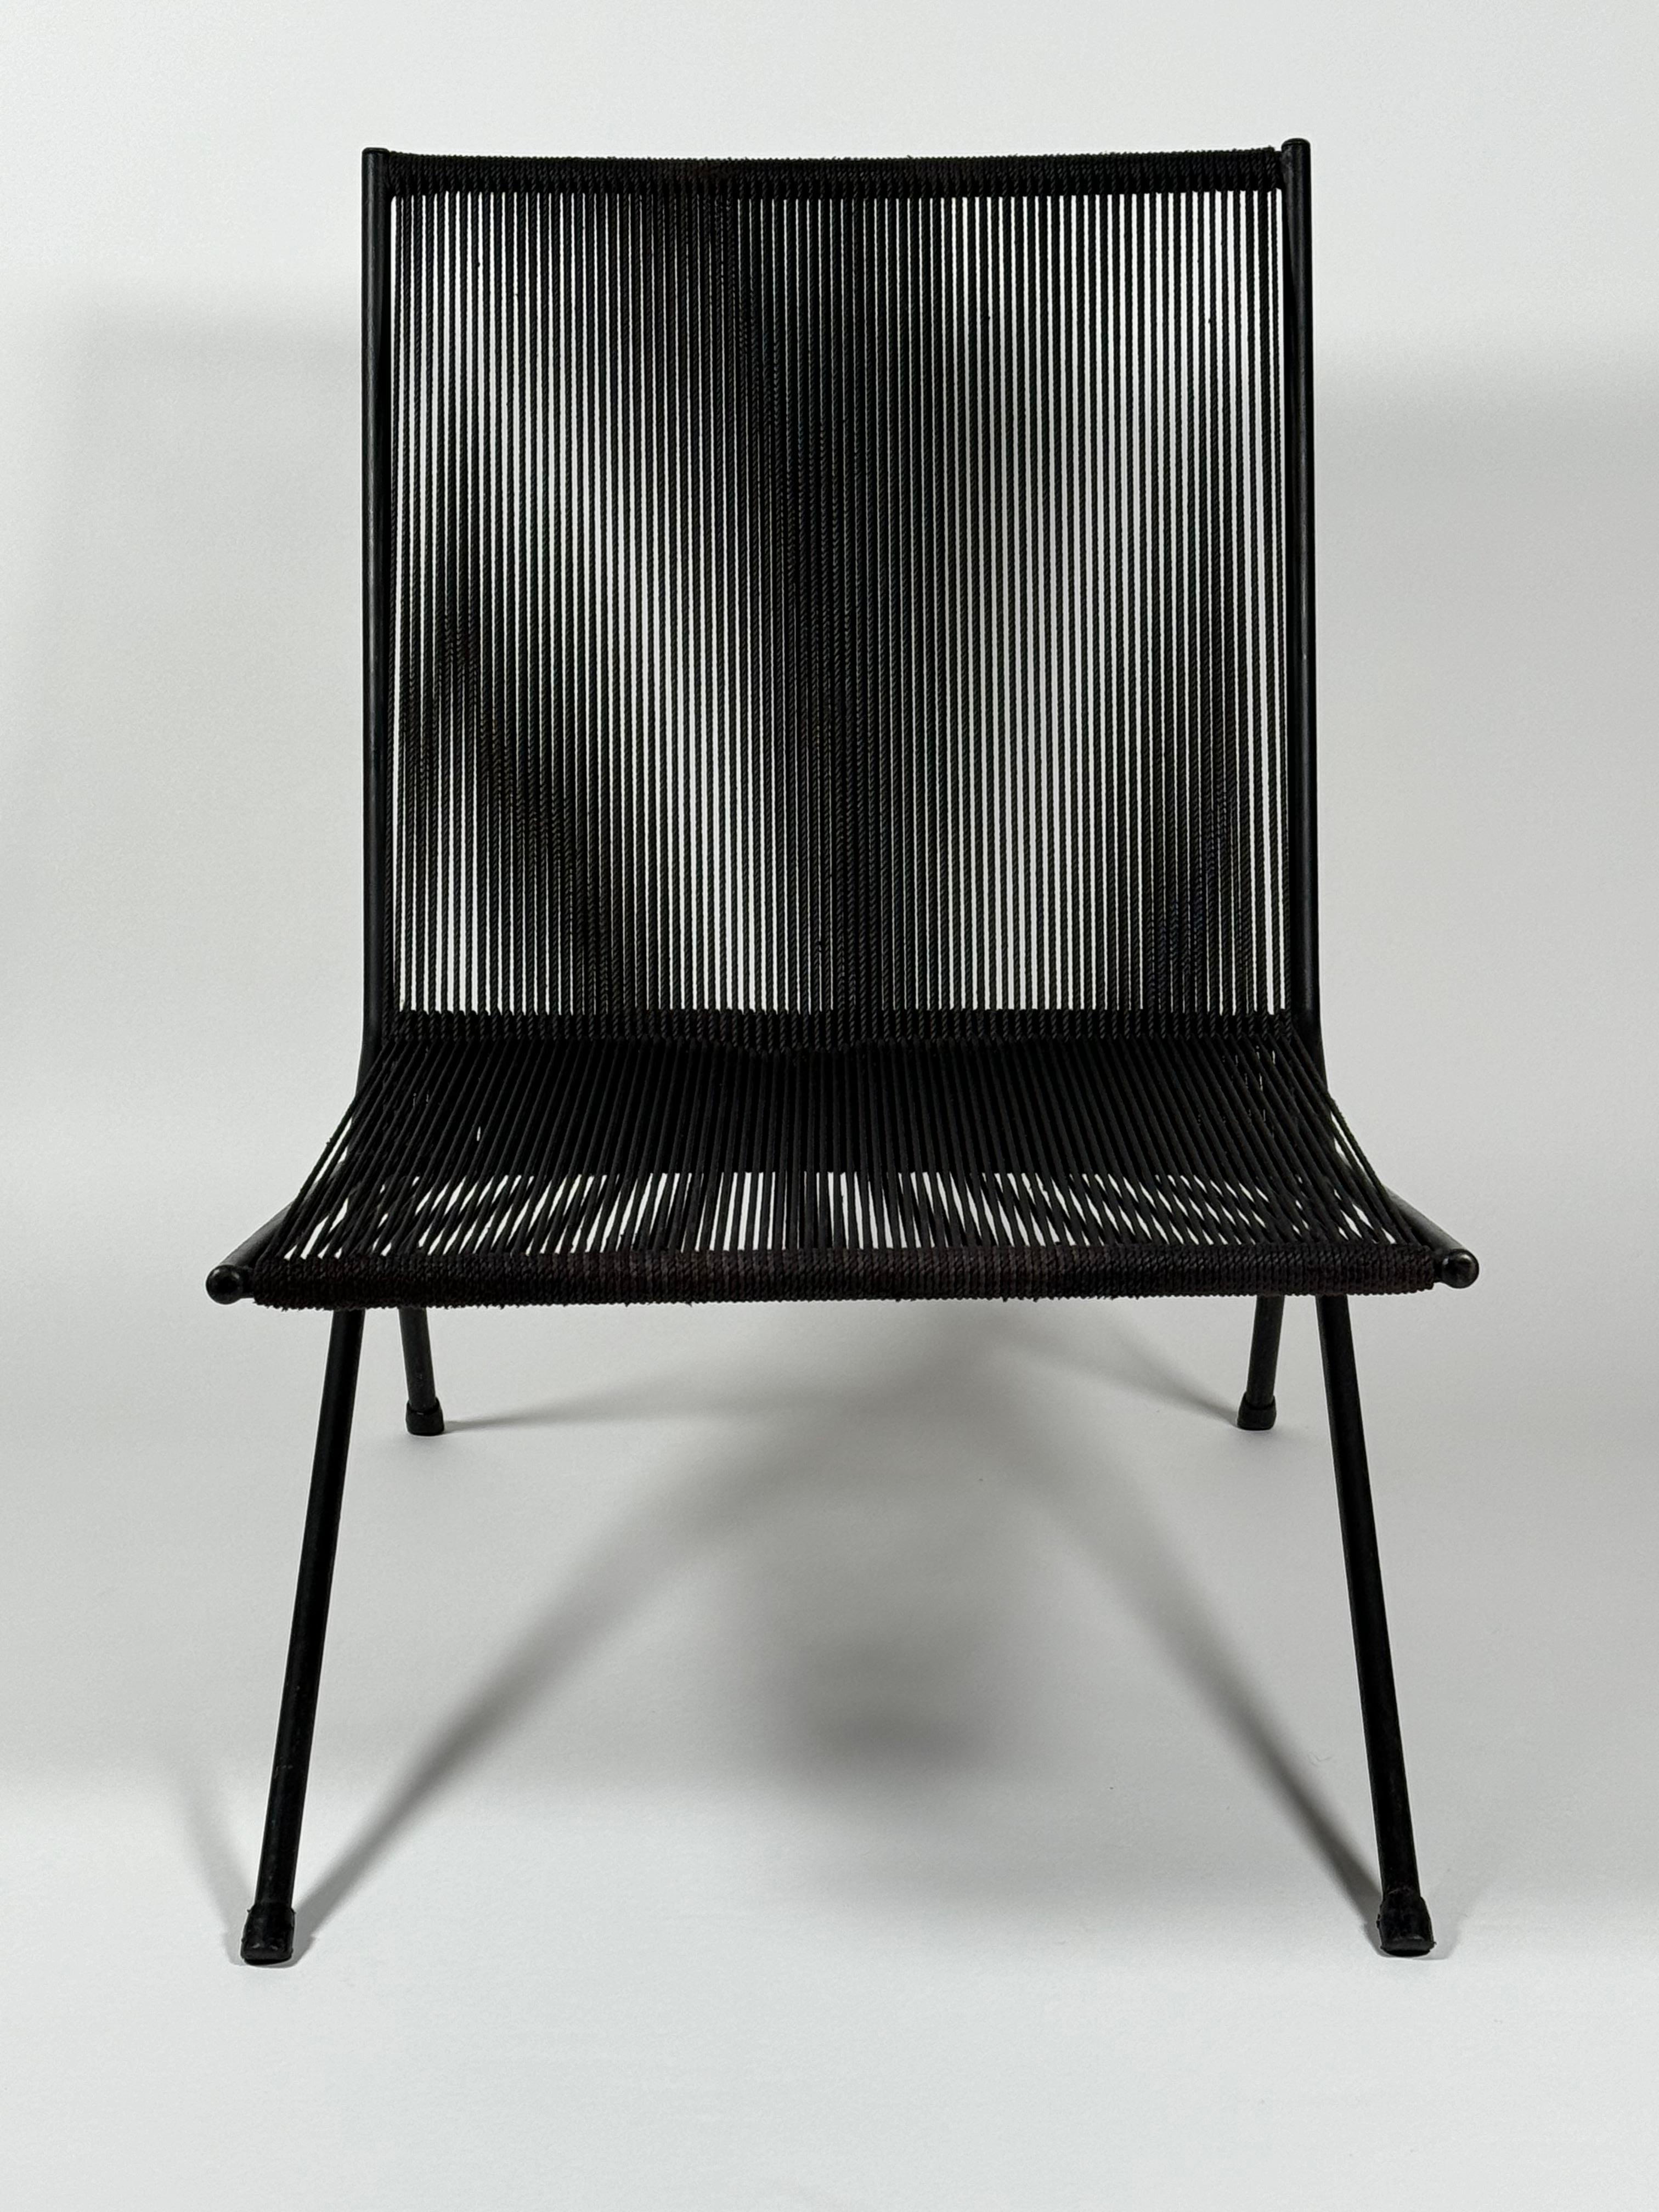 Chaise longue d'intérieur ou d'extérieur en acier et corde, conçue par le designer new-yorkais Allan Gould vers les années 1950. Constitué d'une corde en coton noir et d'un cadre en acier laqué noir. Il s'agit de sa marque de fabrique avec ses